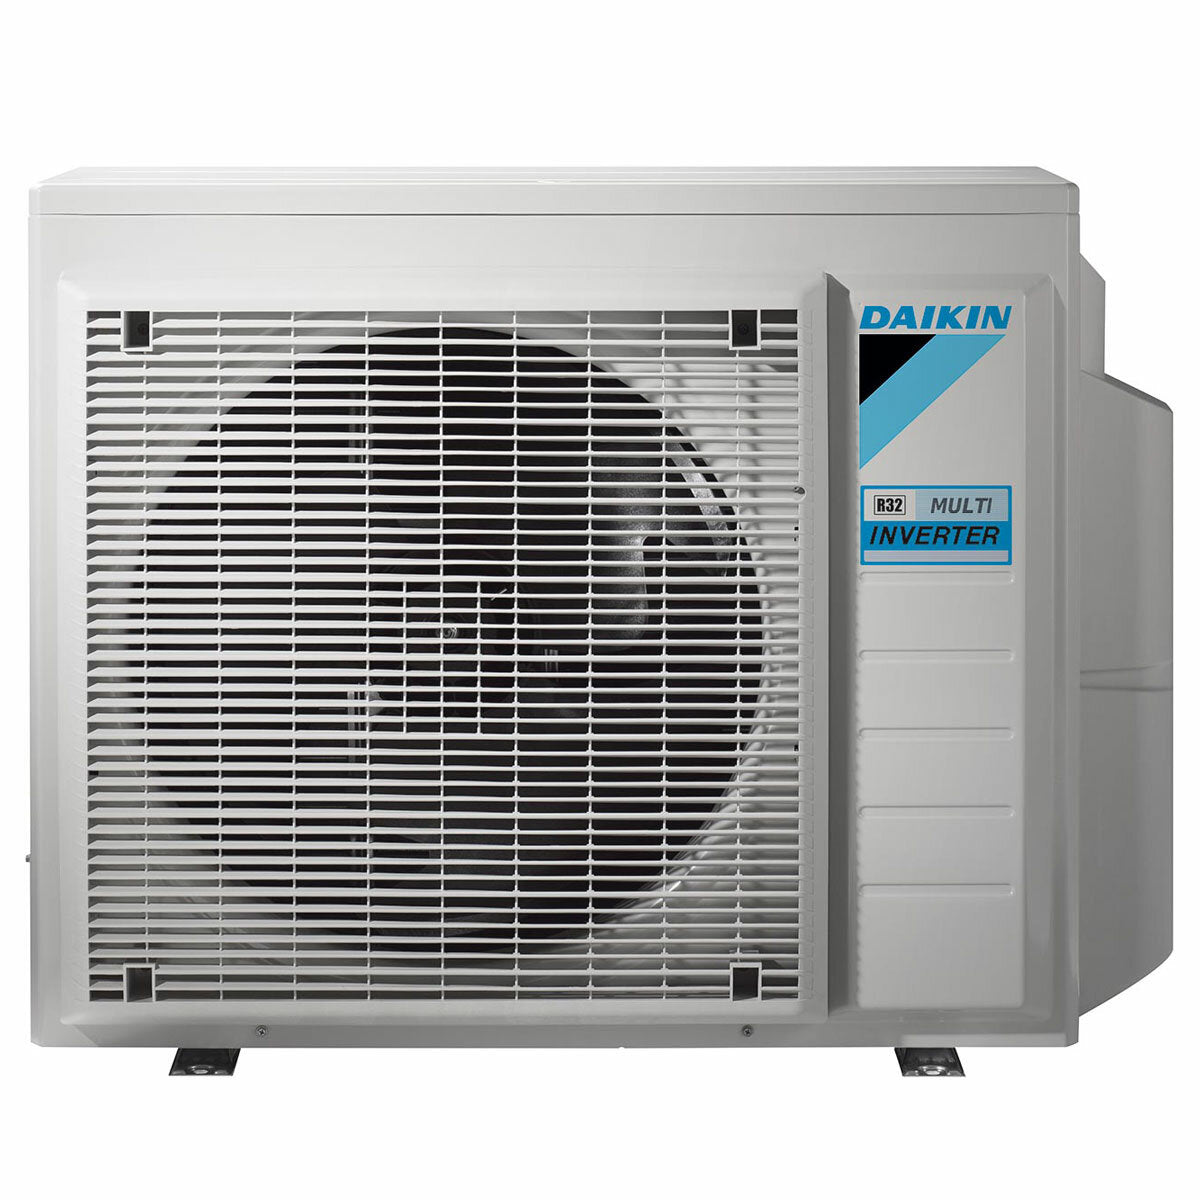 Daikin Emura climatiseur 3 panneaux split 12000+12000+12000+12000 BTU onduleur A++ wifi unité extérieure 7,4 kW Blanc